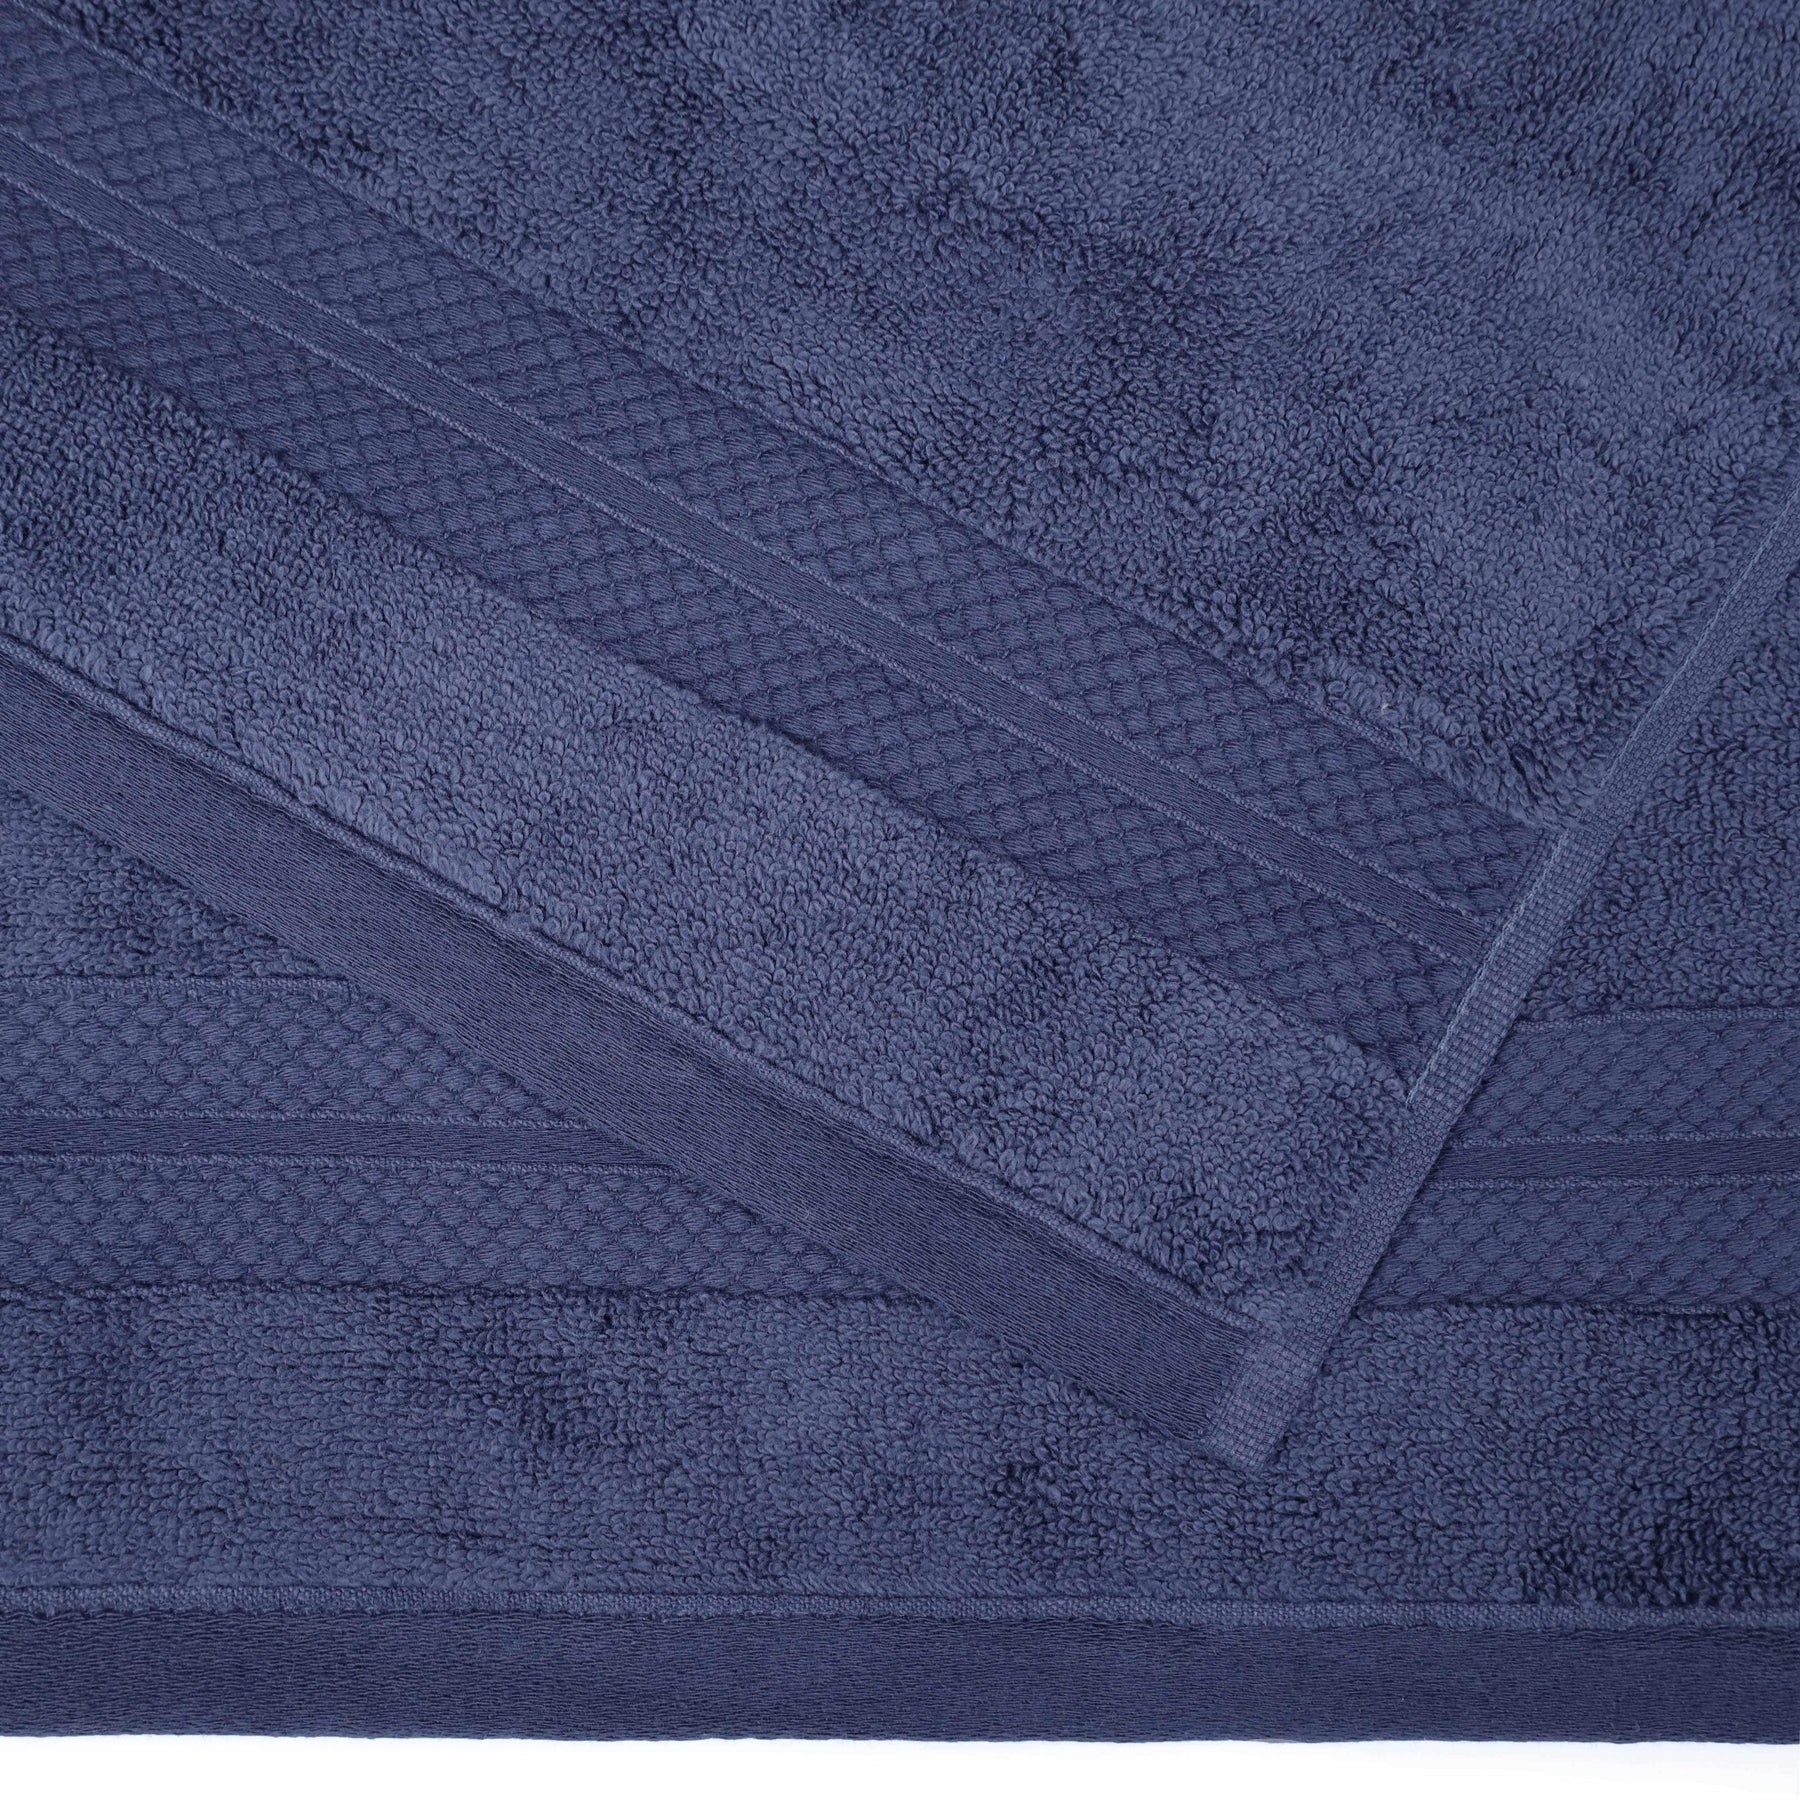  Superior Premium Turkish Cotton Assorted 6-Piece Towel Set - Crown Blue